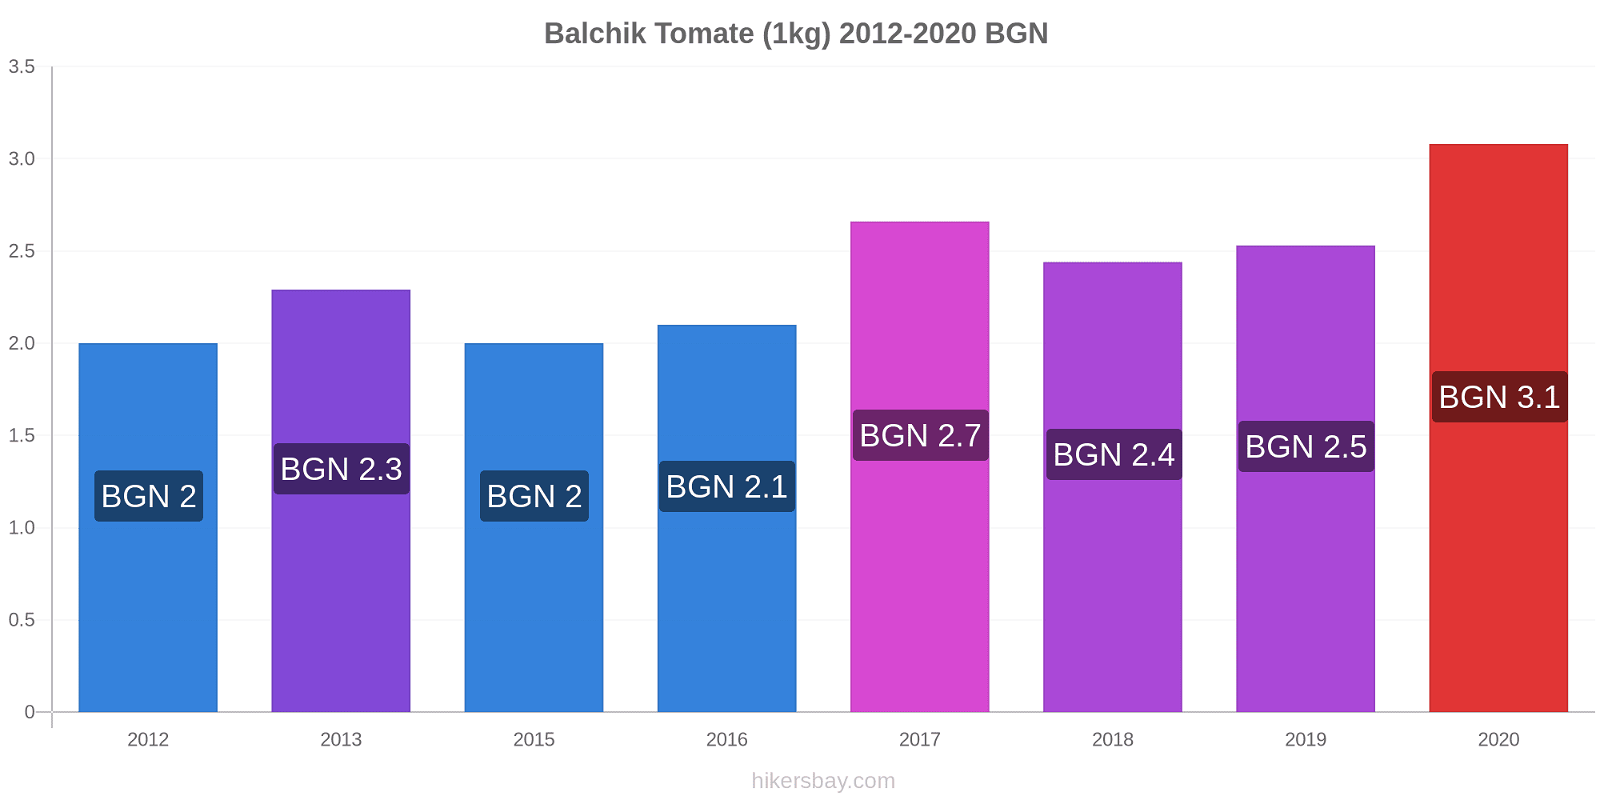 Balchik cambios de precios Tomate (1kg) hikersbay.com